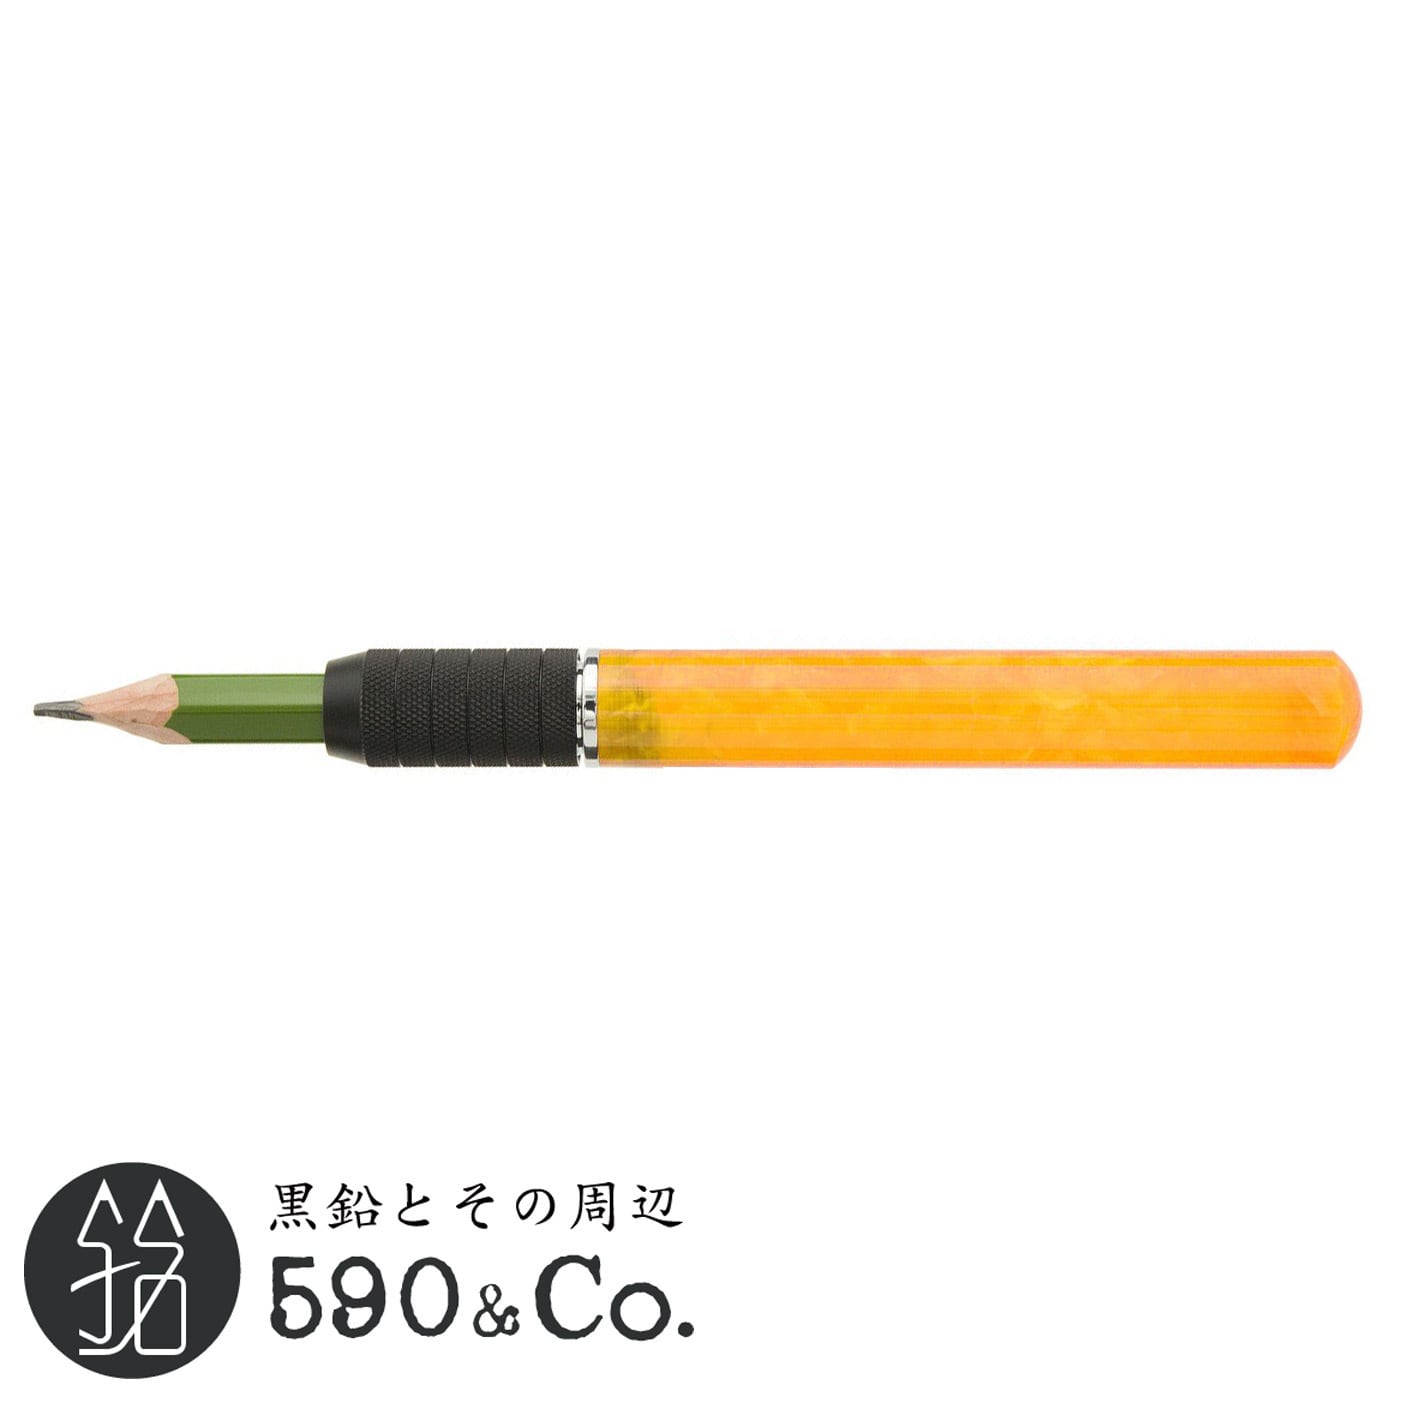 【Pen Star/ペンスター】アクリルエクステンダー (ライトオレンジシャーベット) 590Co.